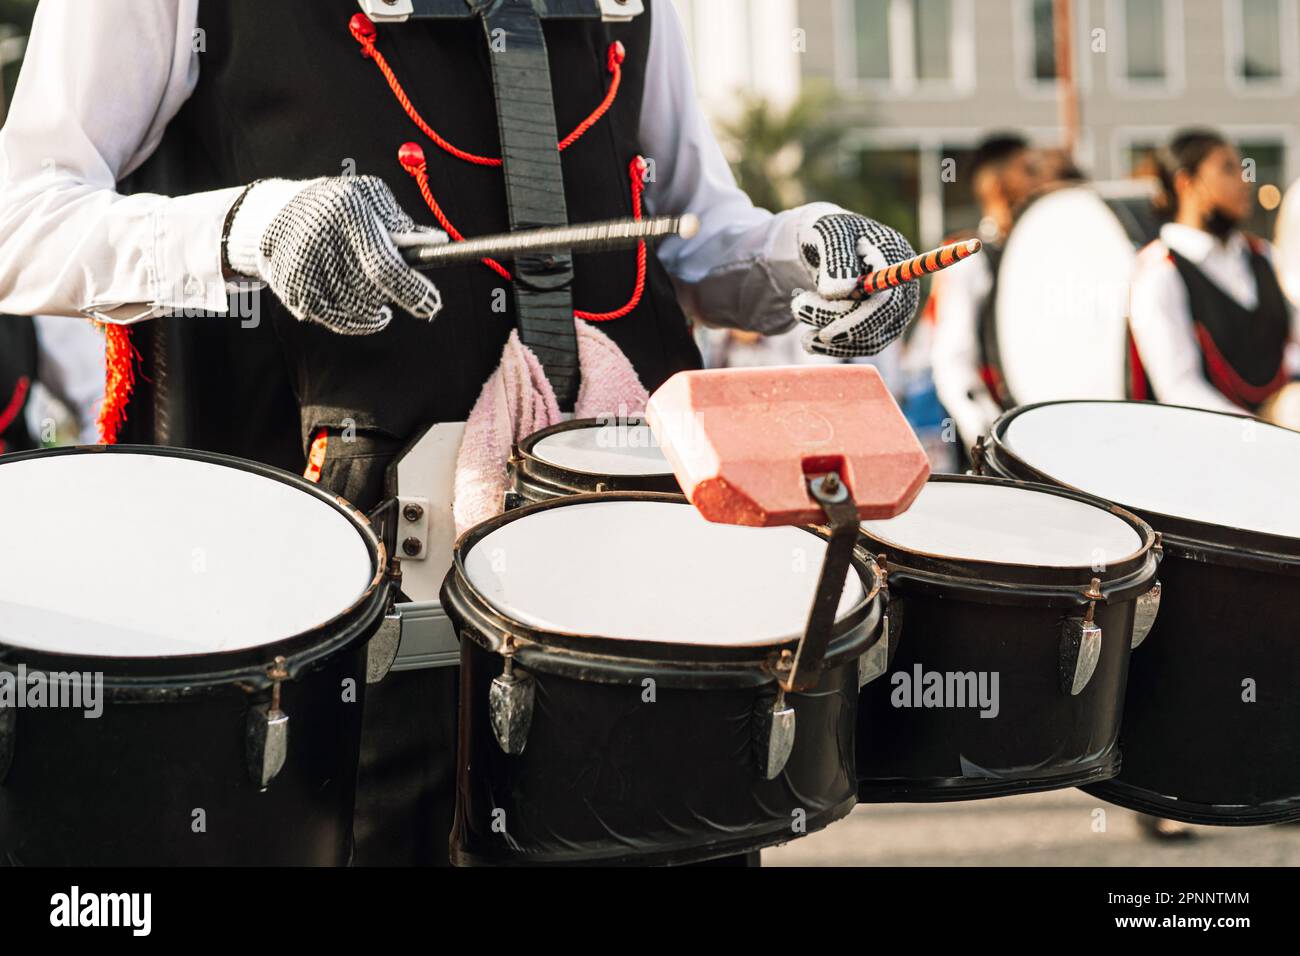 Mani di una persona che suona in una banda marching. Foto Stock